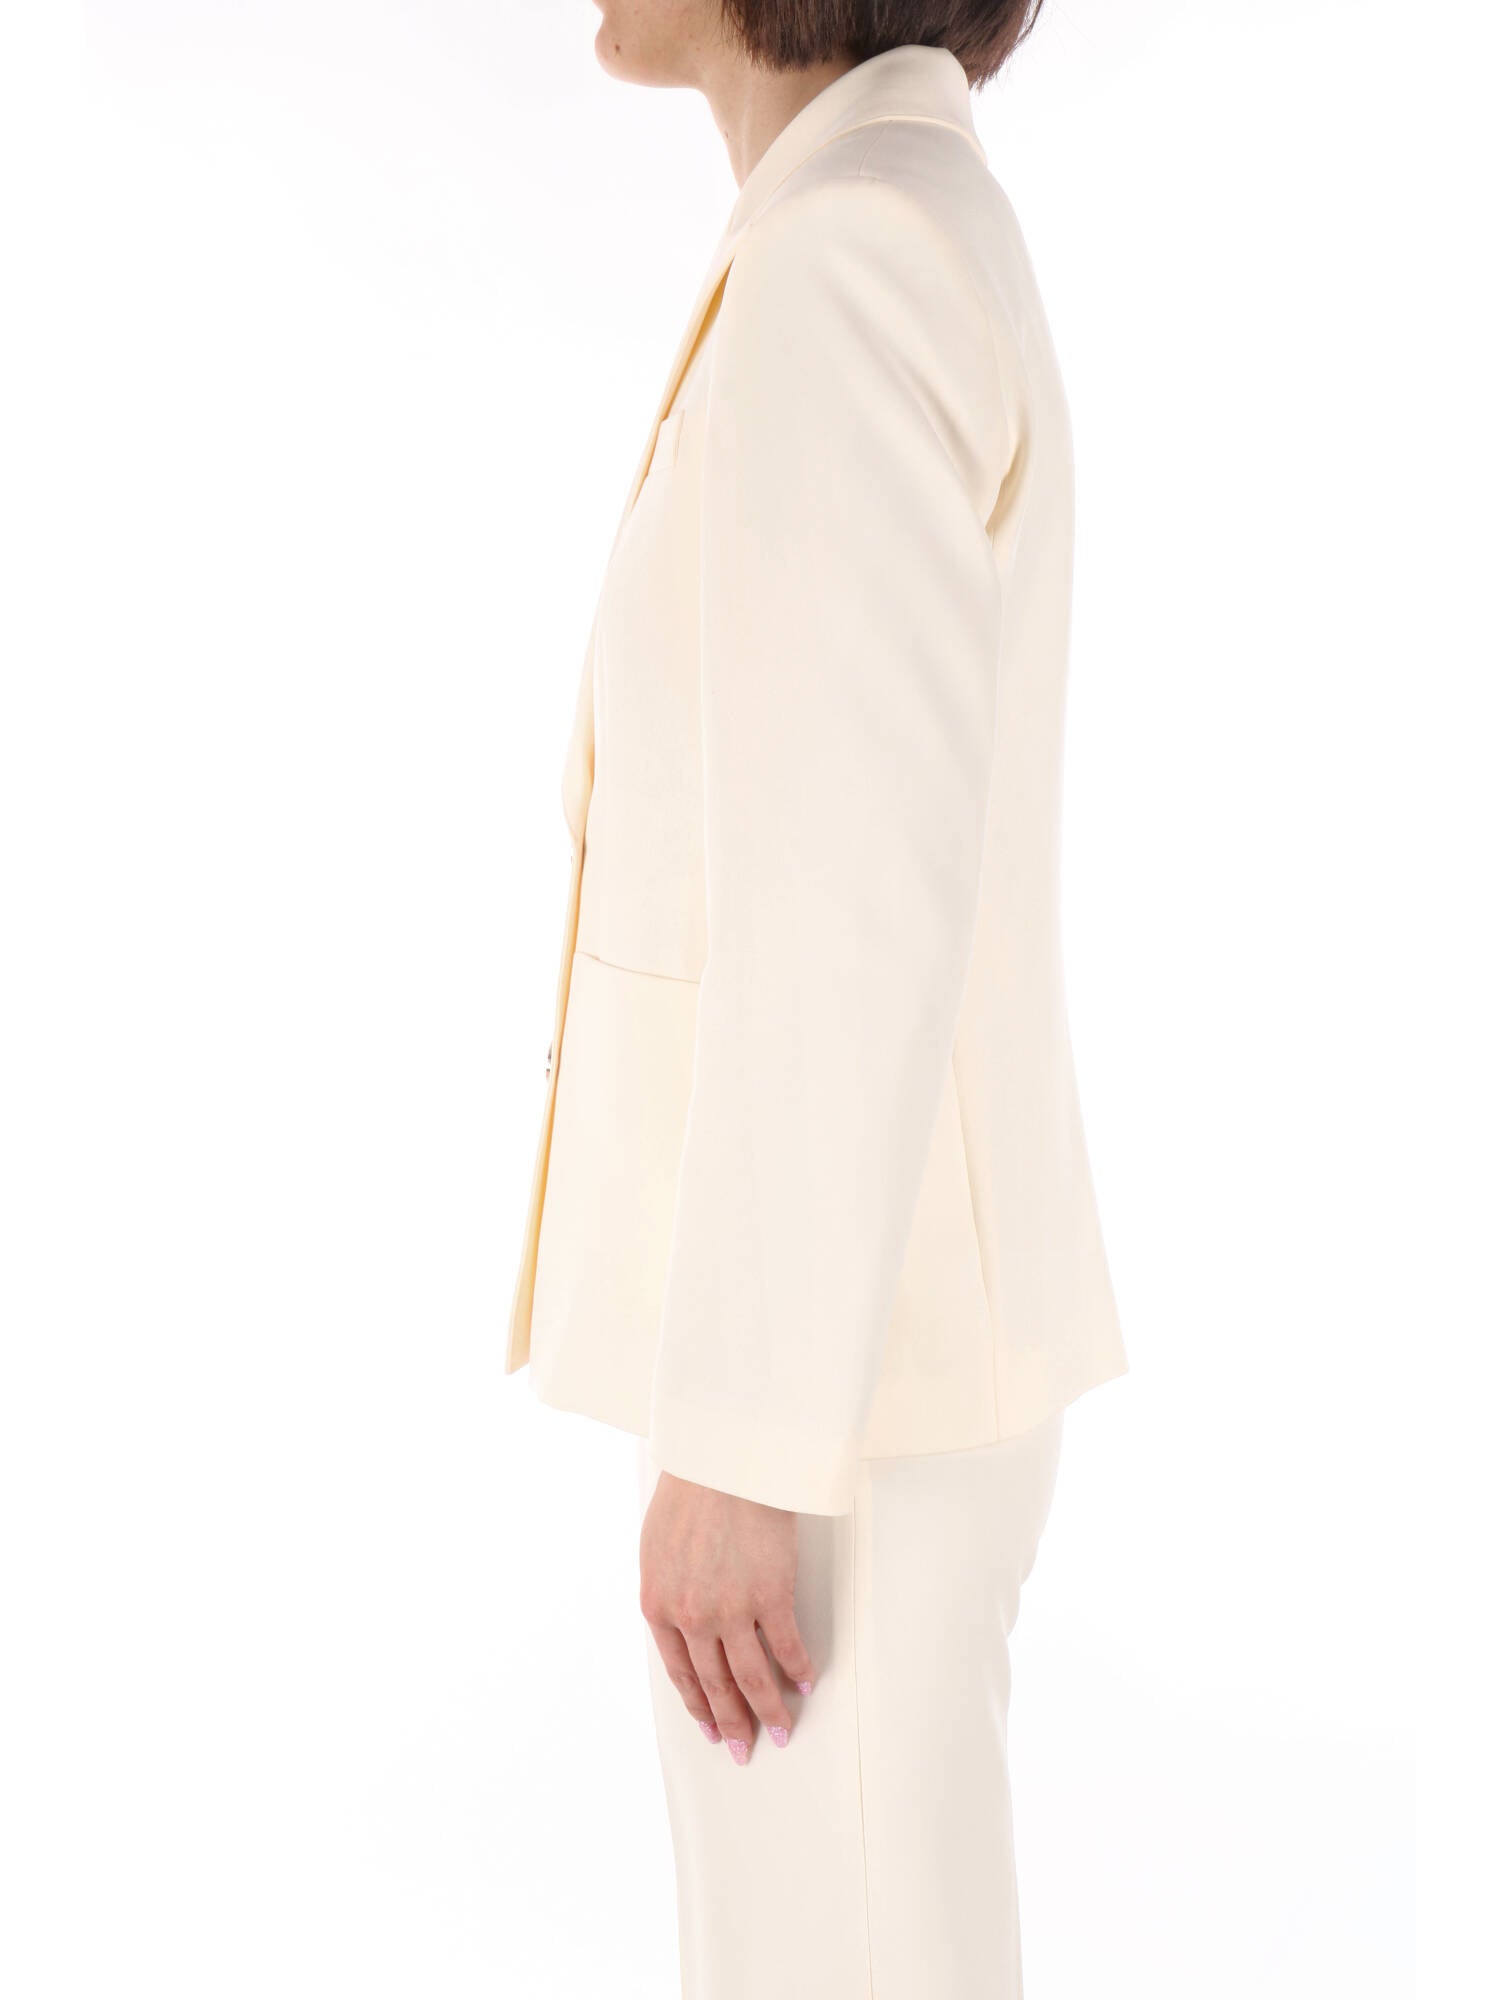 Kocca giacca classica doppiopetto bianca